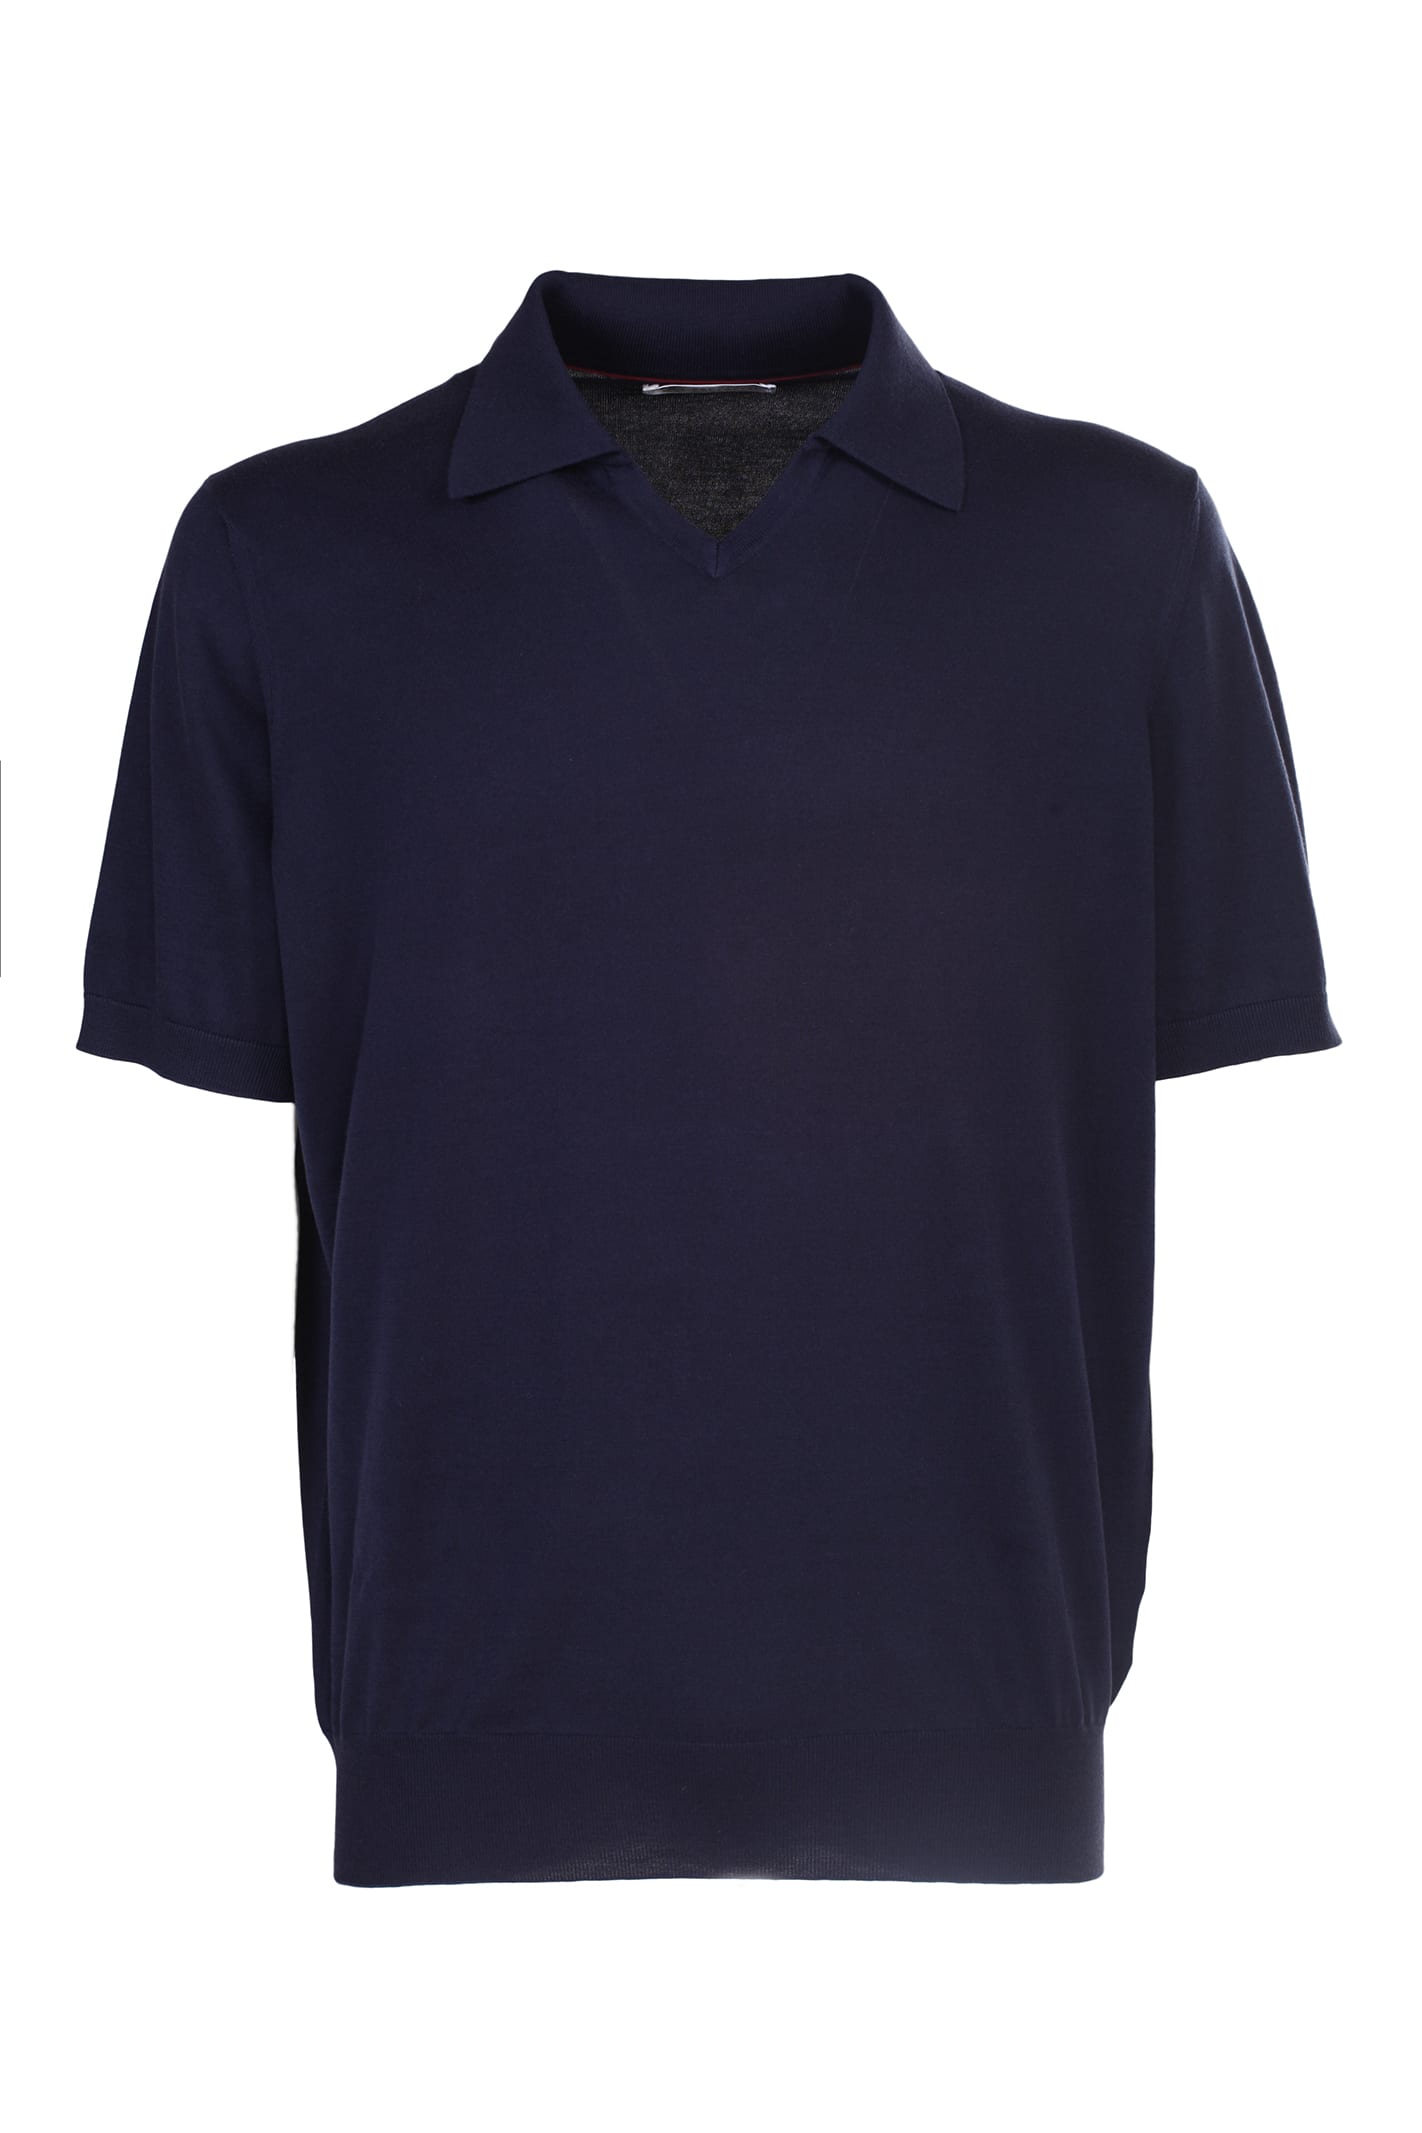 Blue Polo Shirt, Brunello Cucinelli